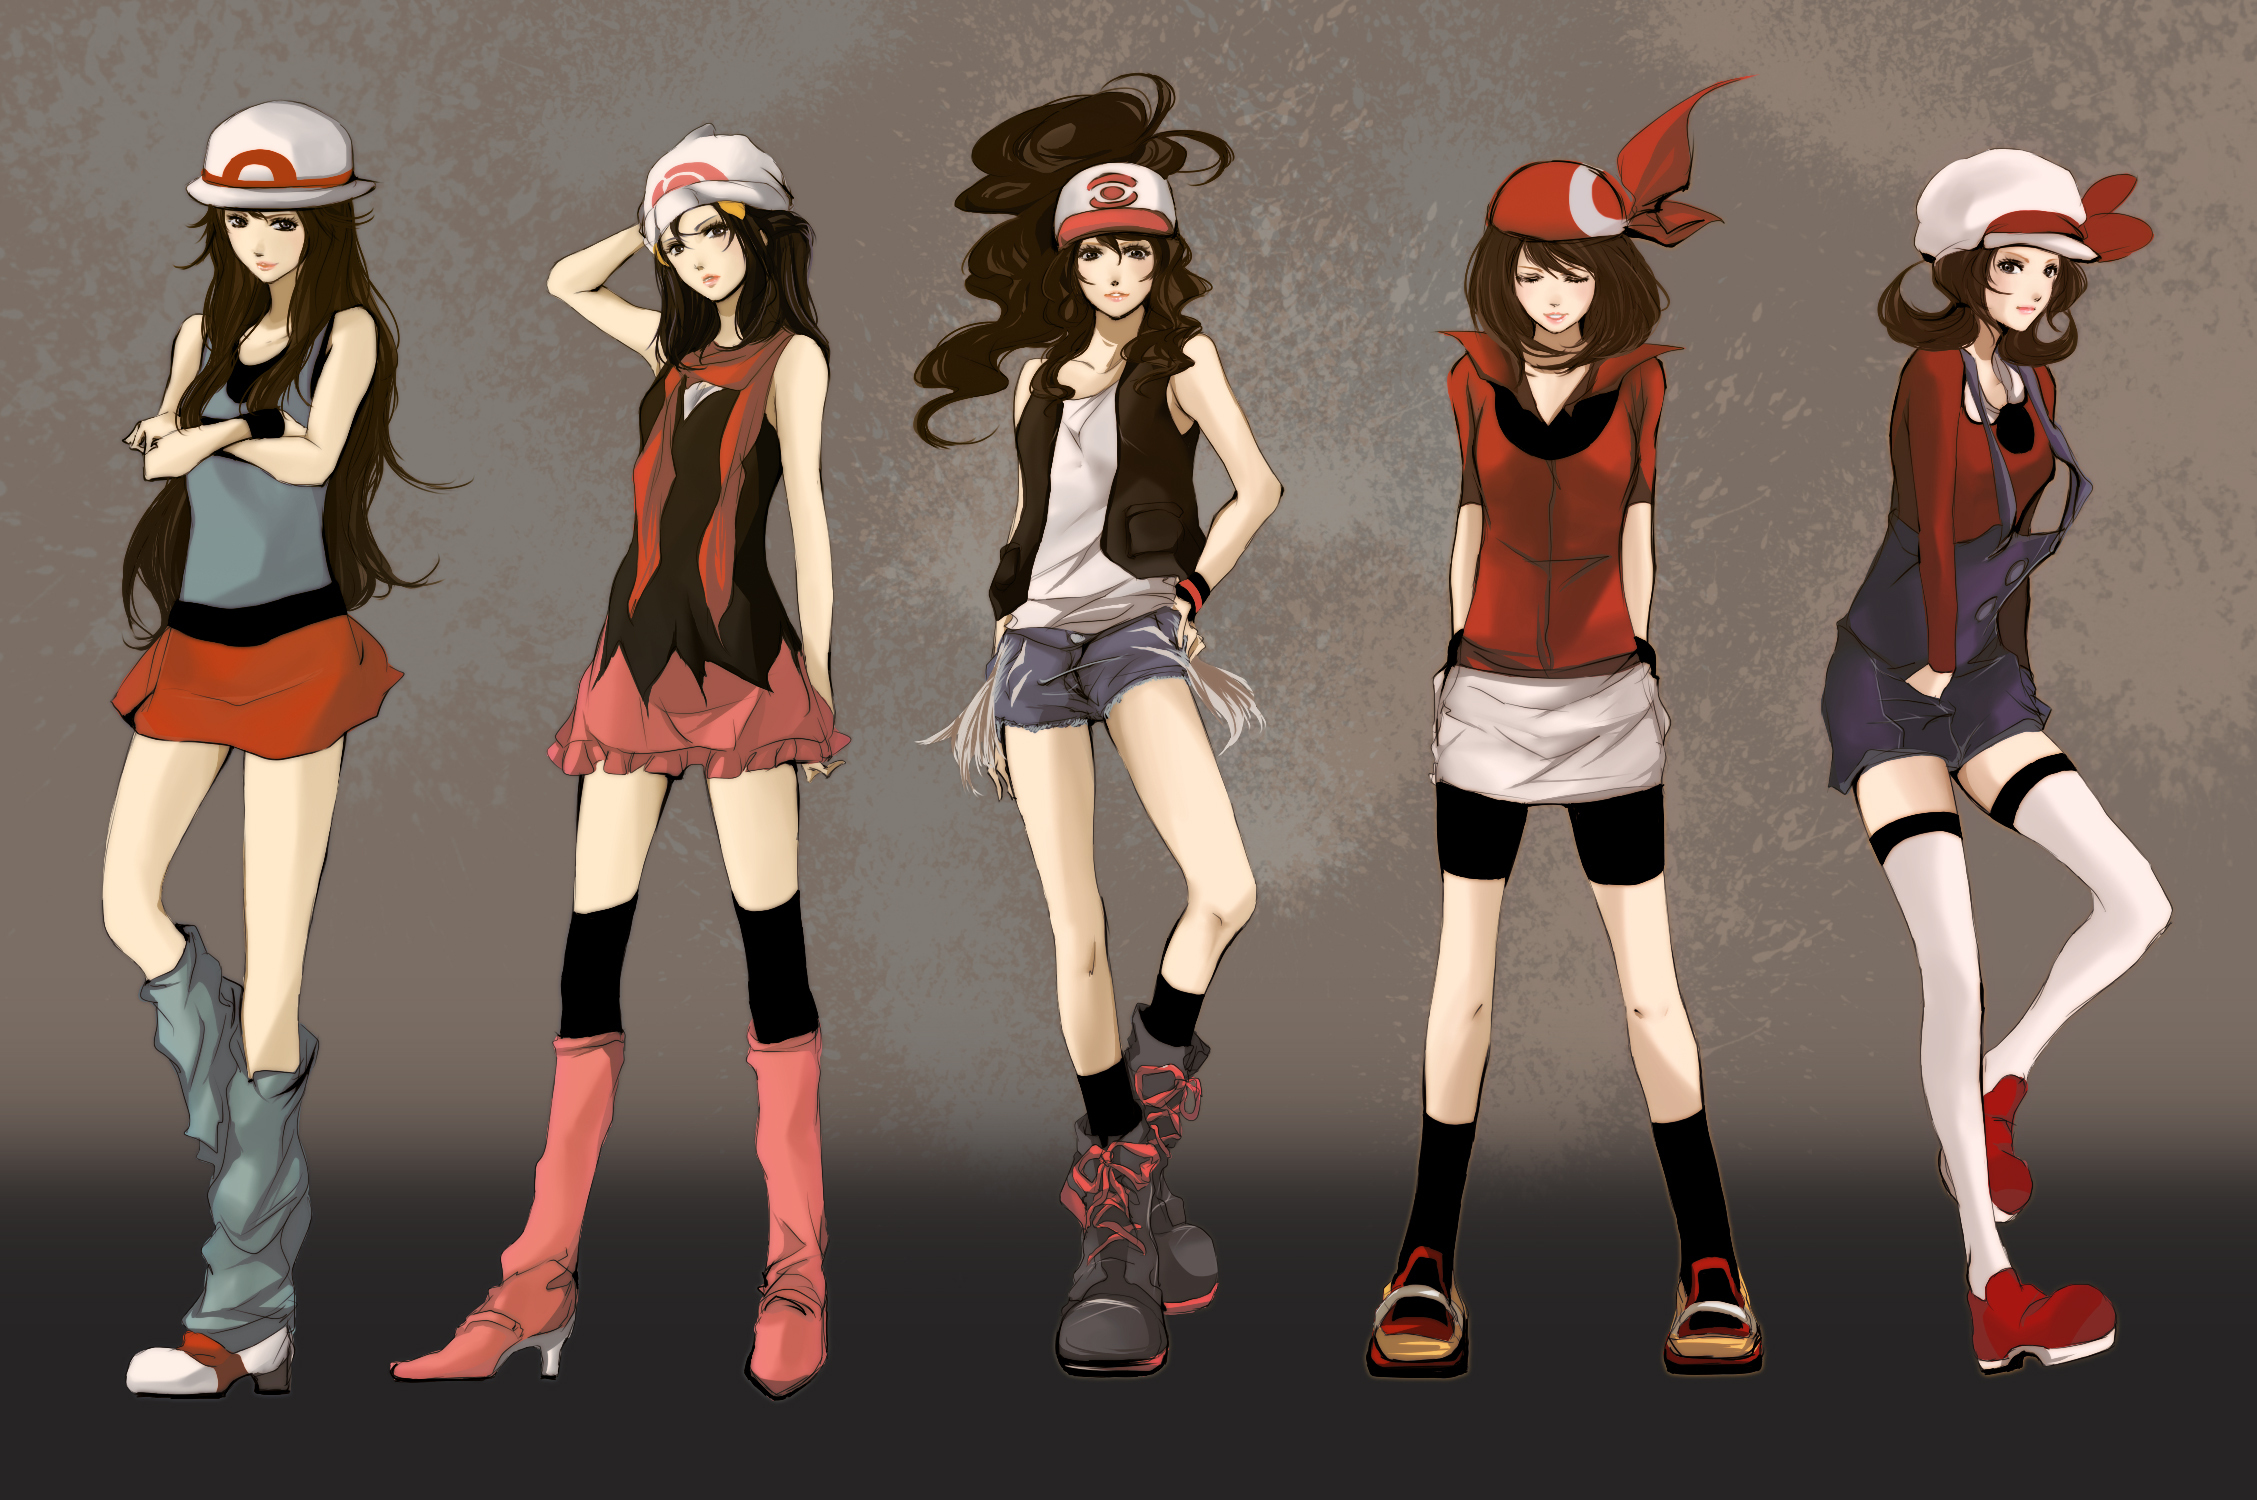 Pokemon anime girls style babes clothes fashion glamour women